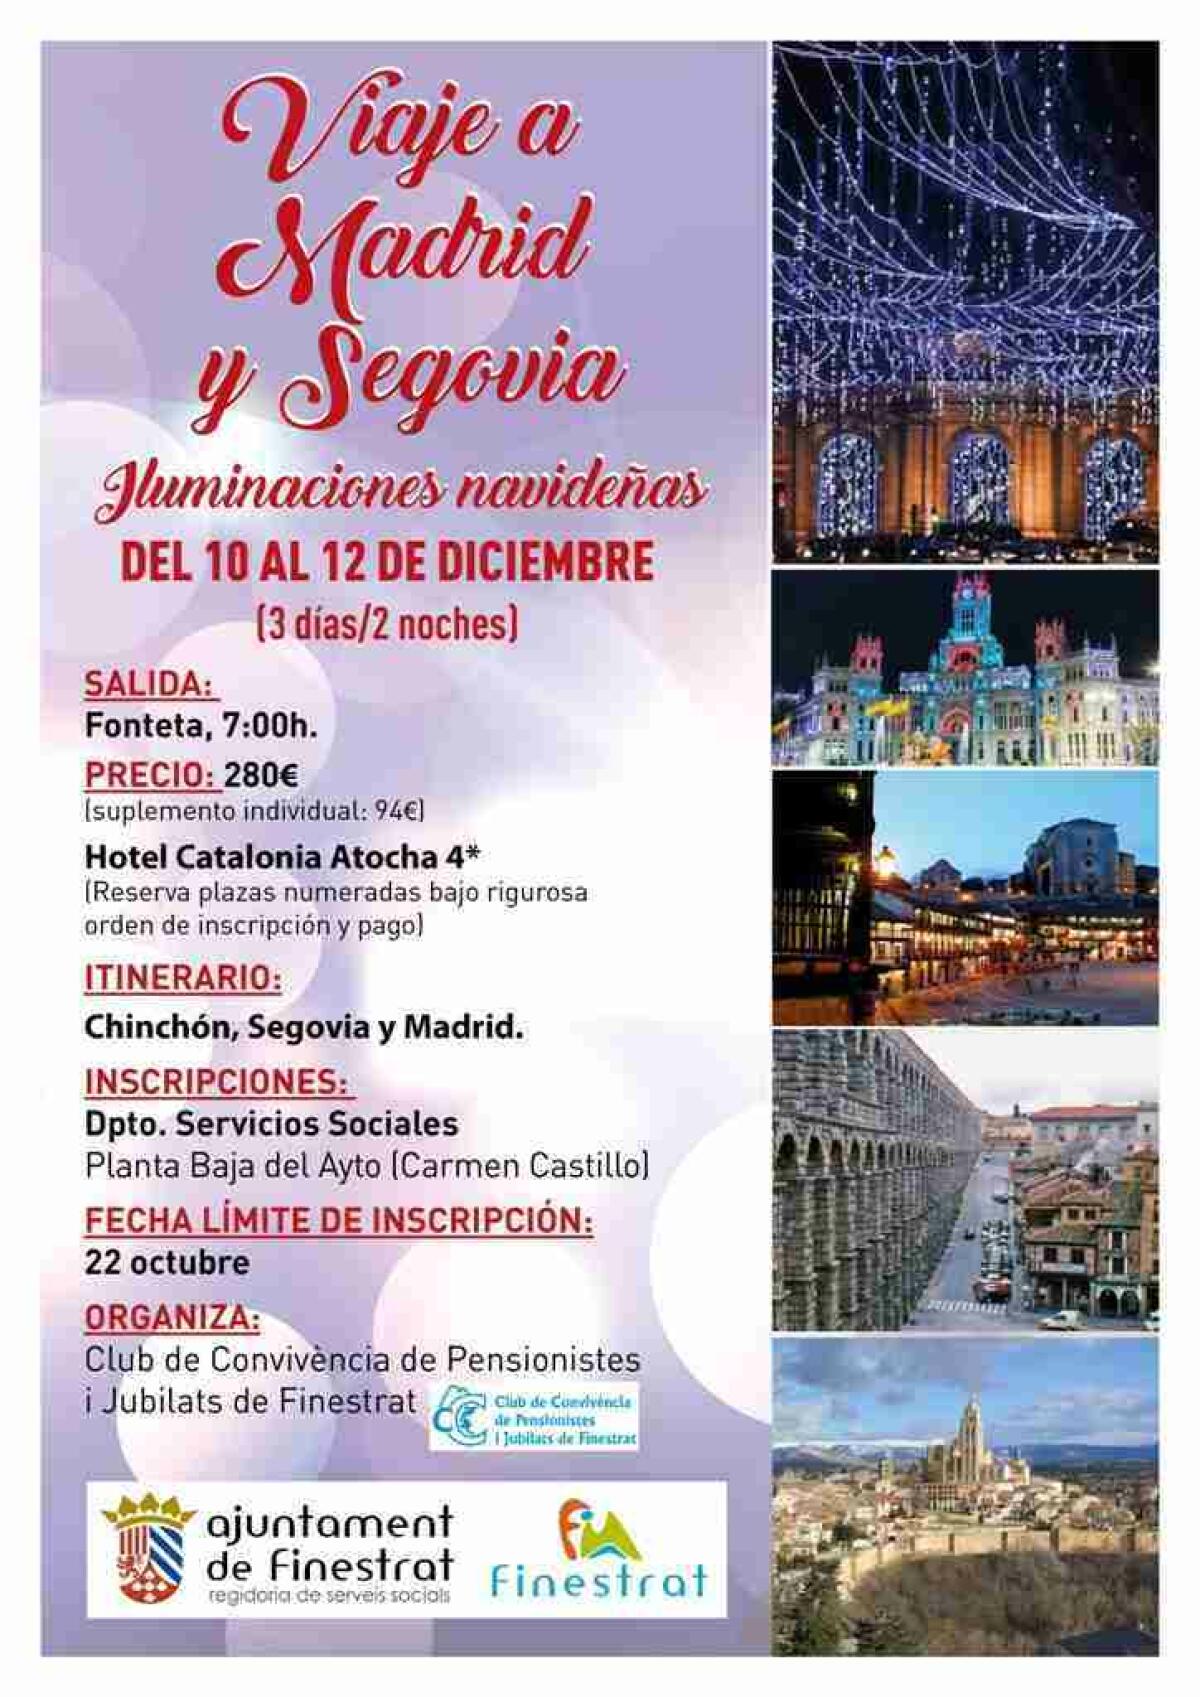 Finestrat organiza un viaje a Madrid y Segovia en diciembre para conocer la iluminación navideña